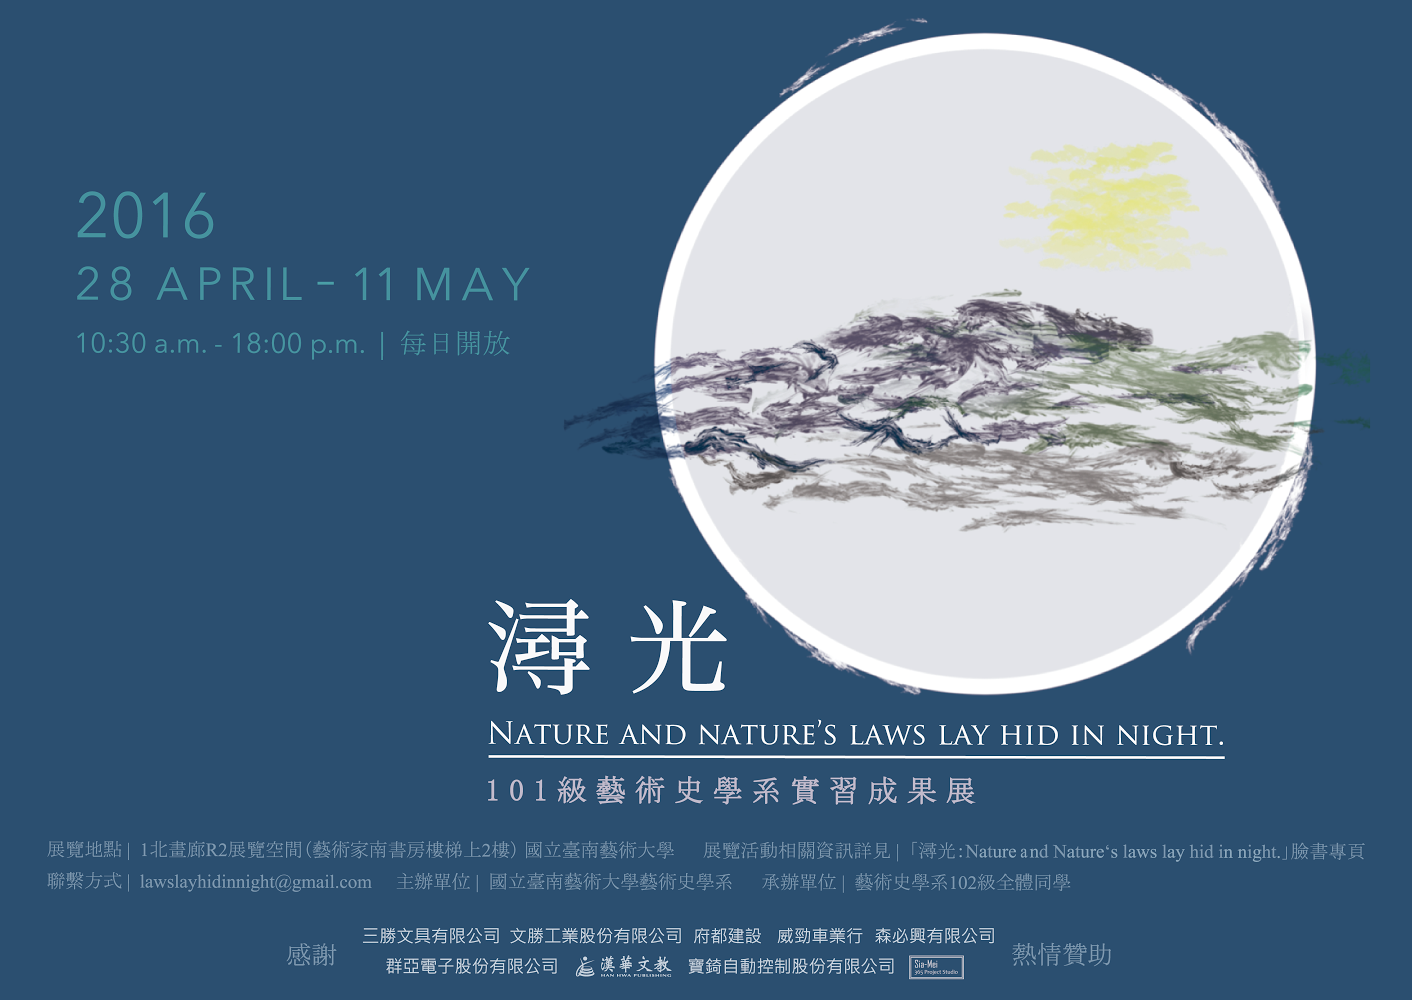 潯光：Nature and Nature's laws lay hid in night.